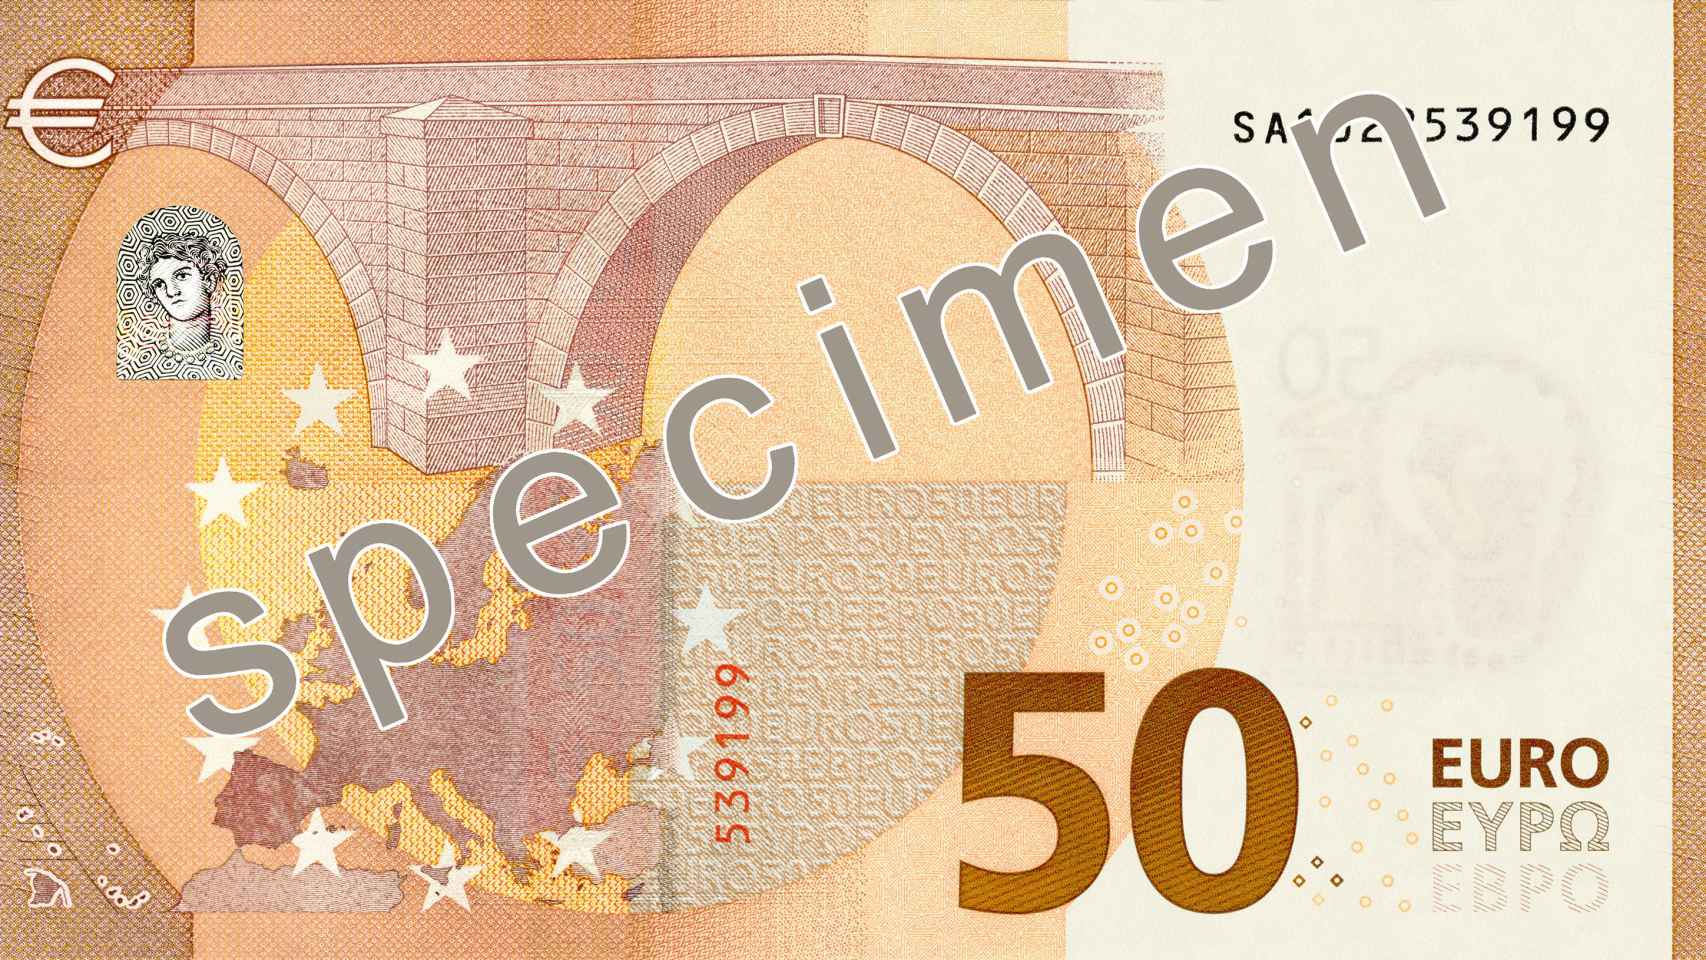 Dorso del nuevo billete de 50 euros.